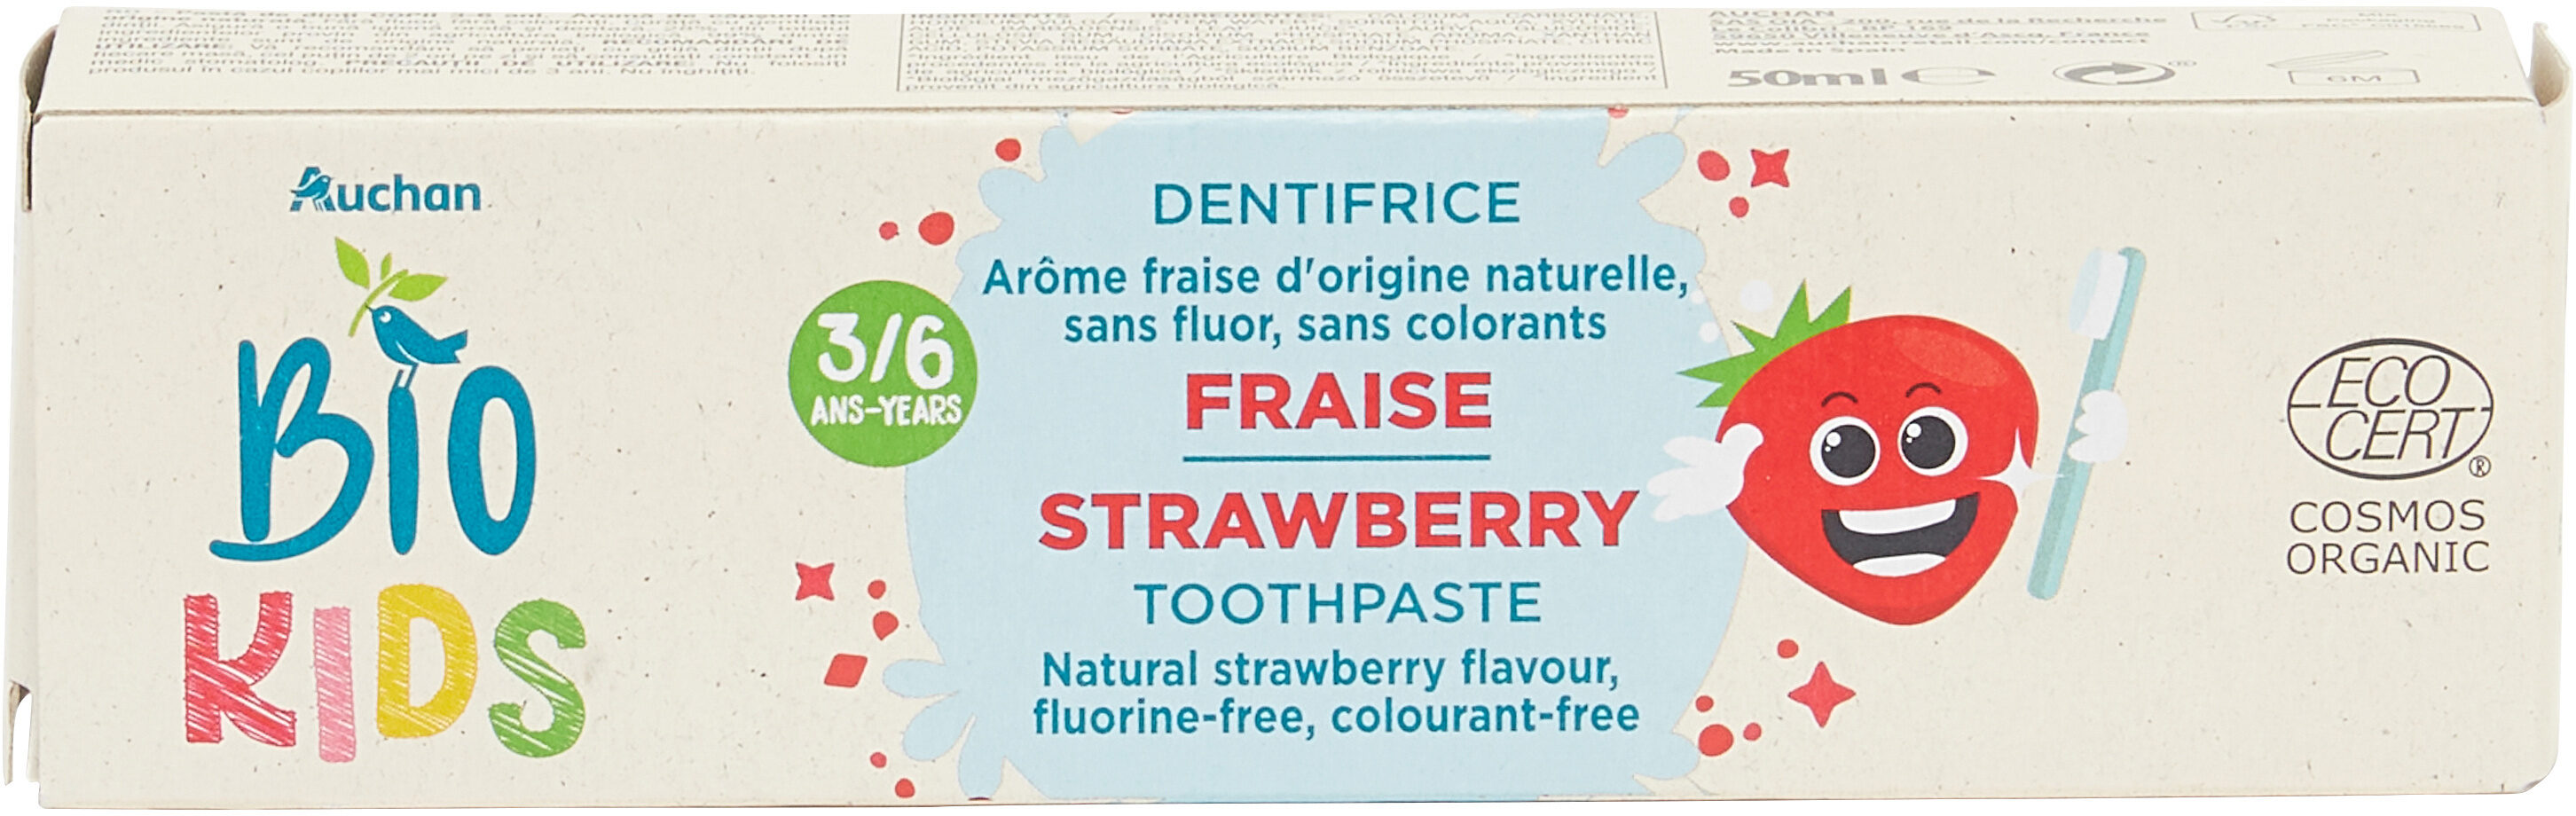 Auchan bio dentifrice enfants 3-6 ans fraise - Product - en